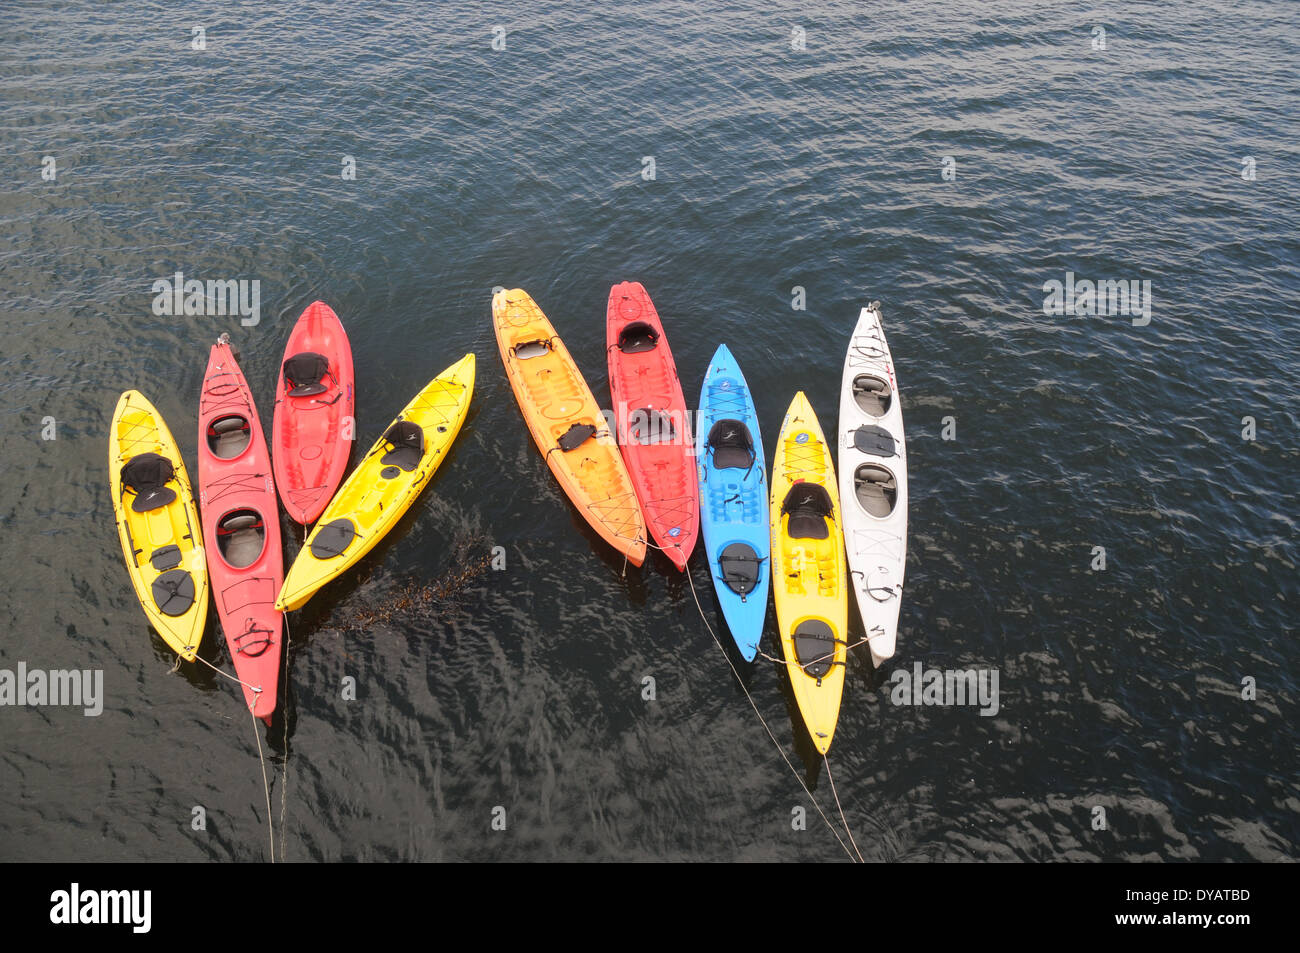 rental kayaks in water at santa cruz pier california Stock Photo